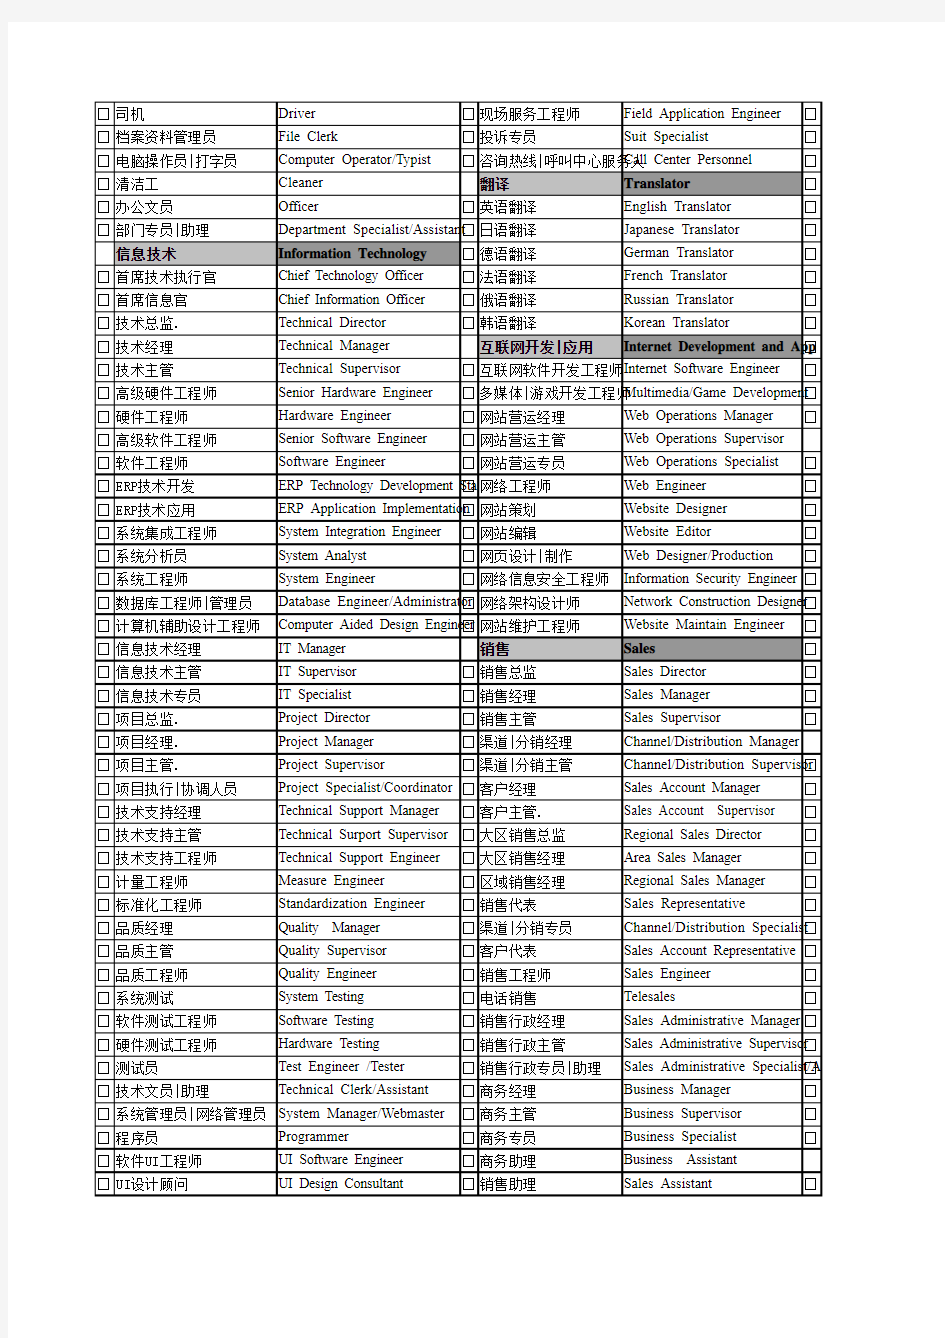 中英文职位列表大全